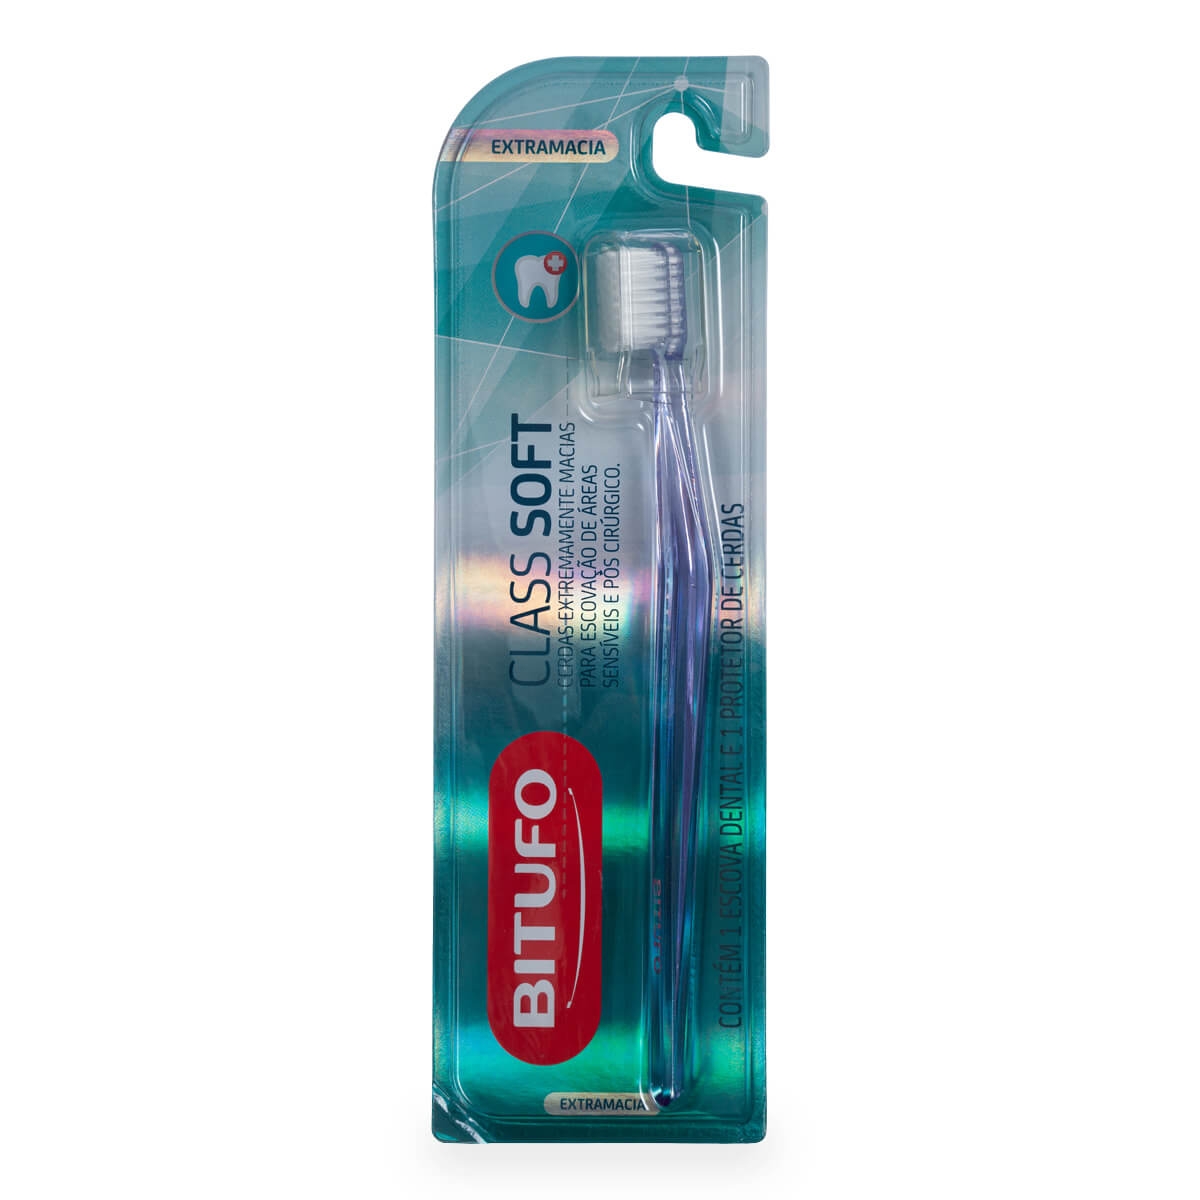 Escova de Dente Bitufo Class Soft Extra Macia 1 Unidade + 1 Protetor de Cerdas 1 Unidade